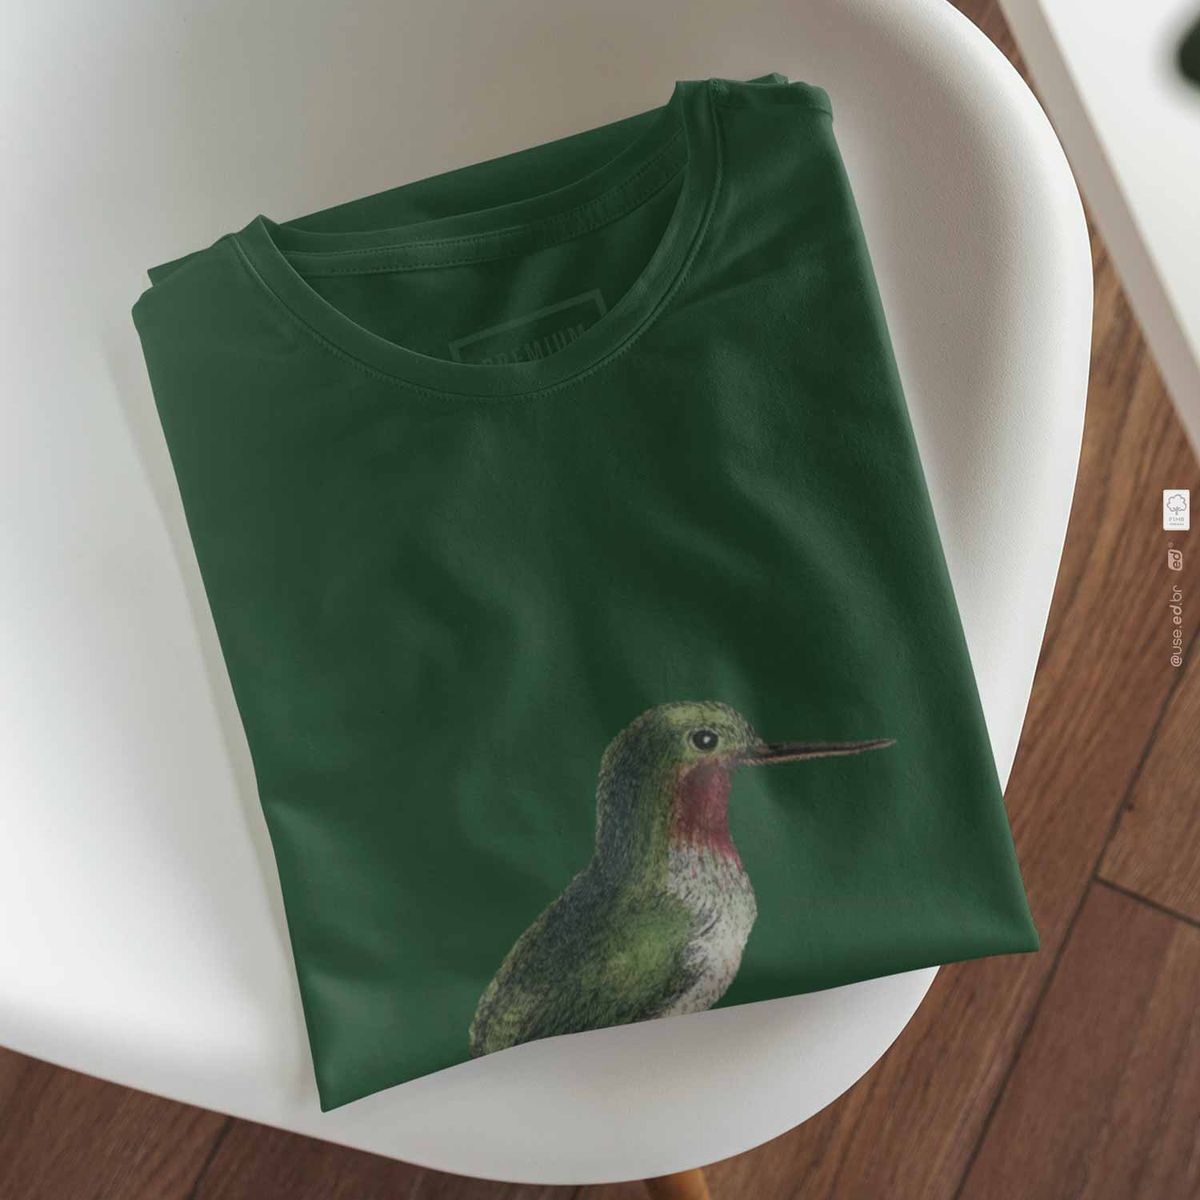 Nome do produto: Toda Porto Riquenha - Camiseta Pima Peruana Verde Musgo